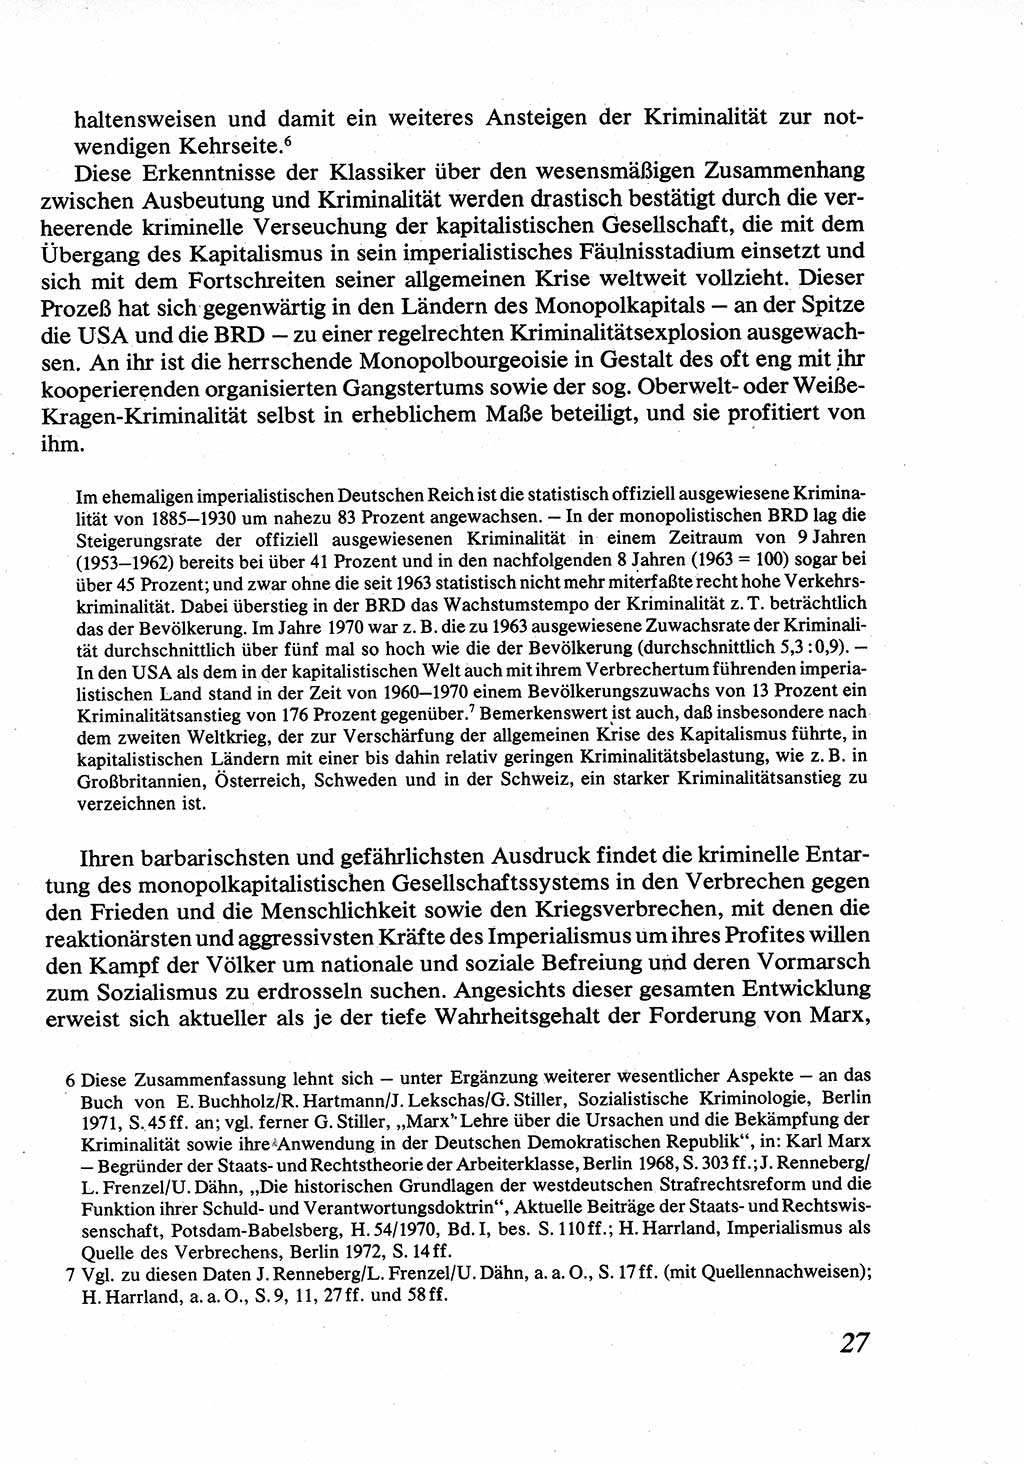 Strafrecht [Deutsche Demokratische Republik (DDR)], Allgemeiner Teil, Lehrbuch 1976, Seite 27 (Strafr. DDR AT Lb. 1976, S. 27)